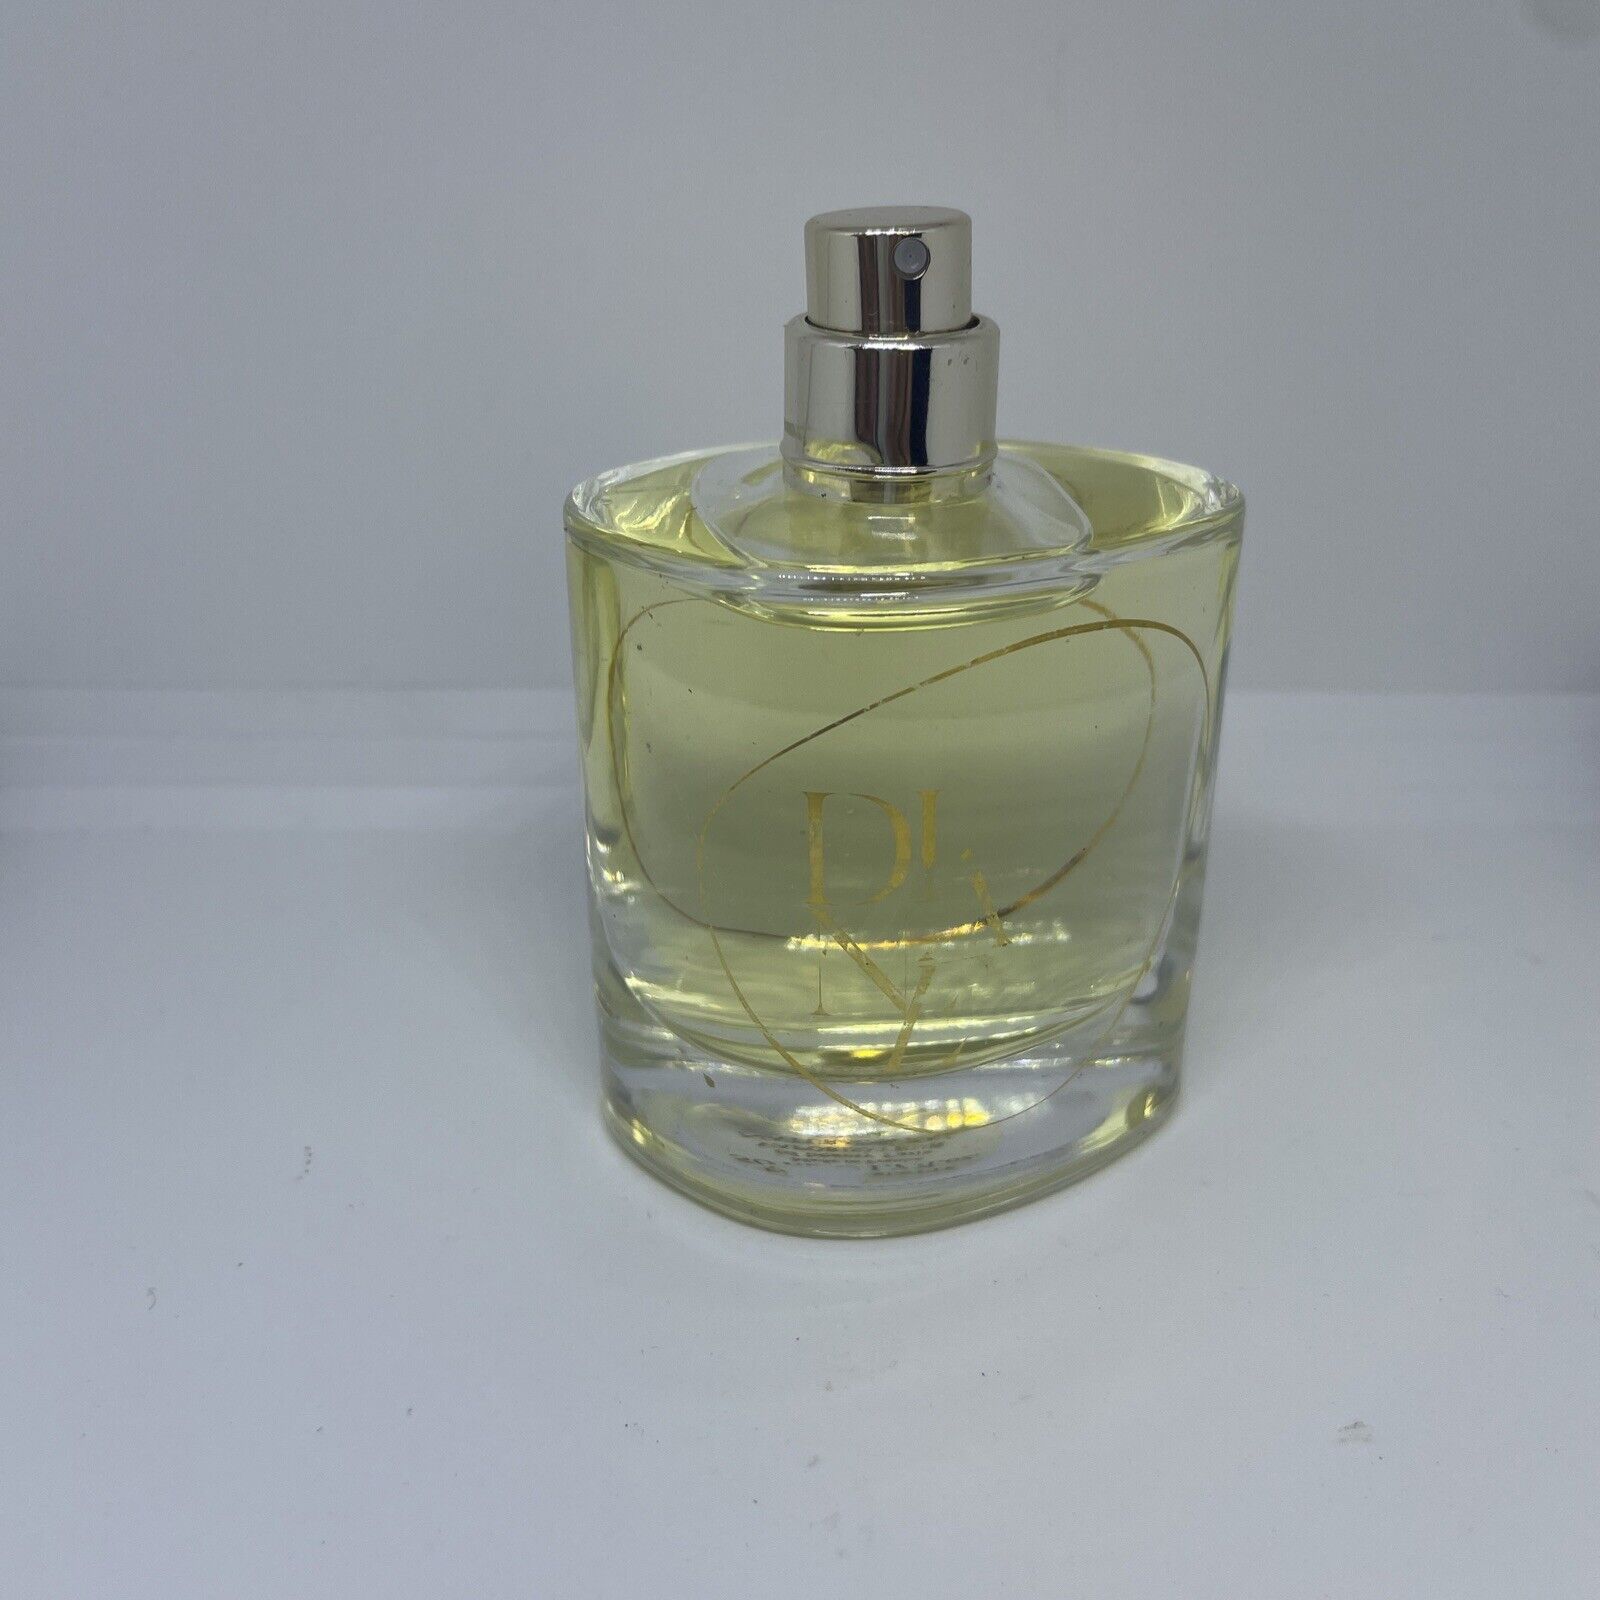 DIANE by DIANE VON FURSTENBERG EDT FOR WOMEN Perfume 1.7oz / 50ml RARE